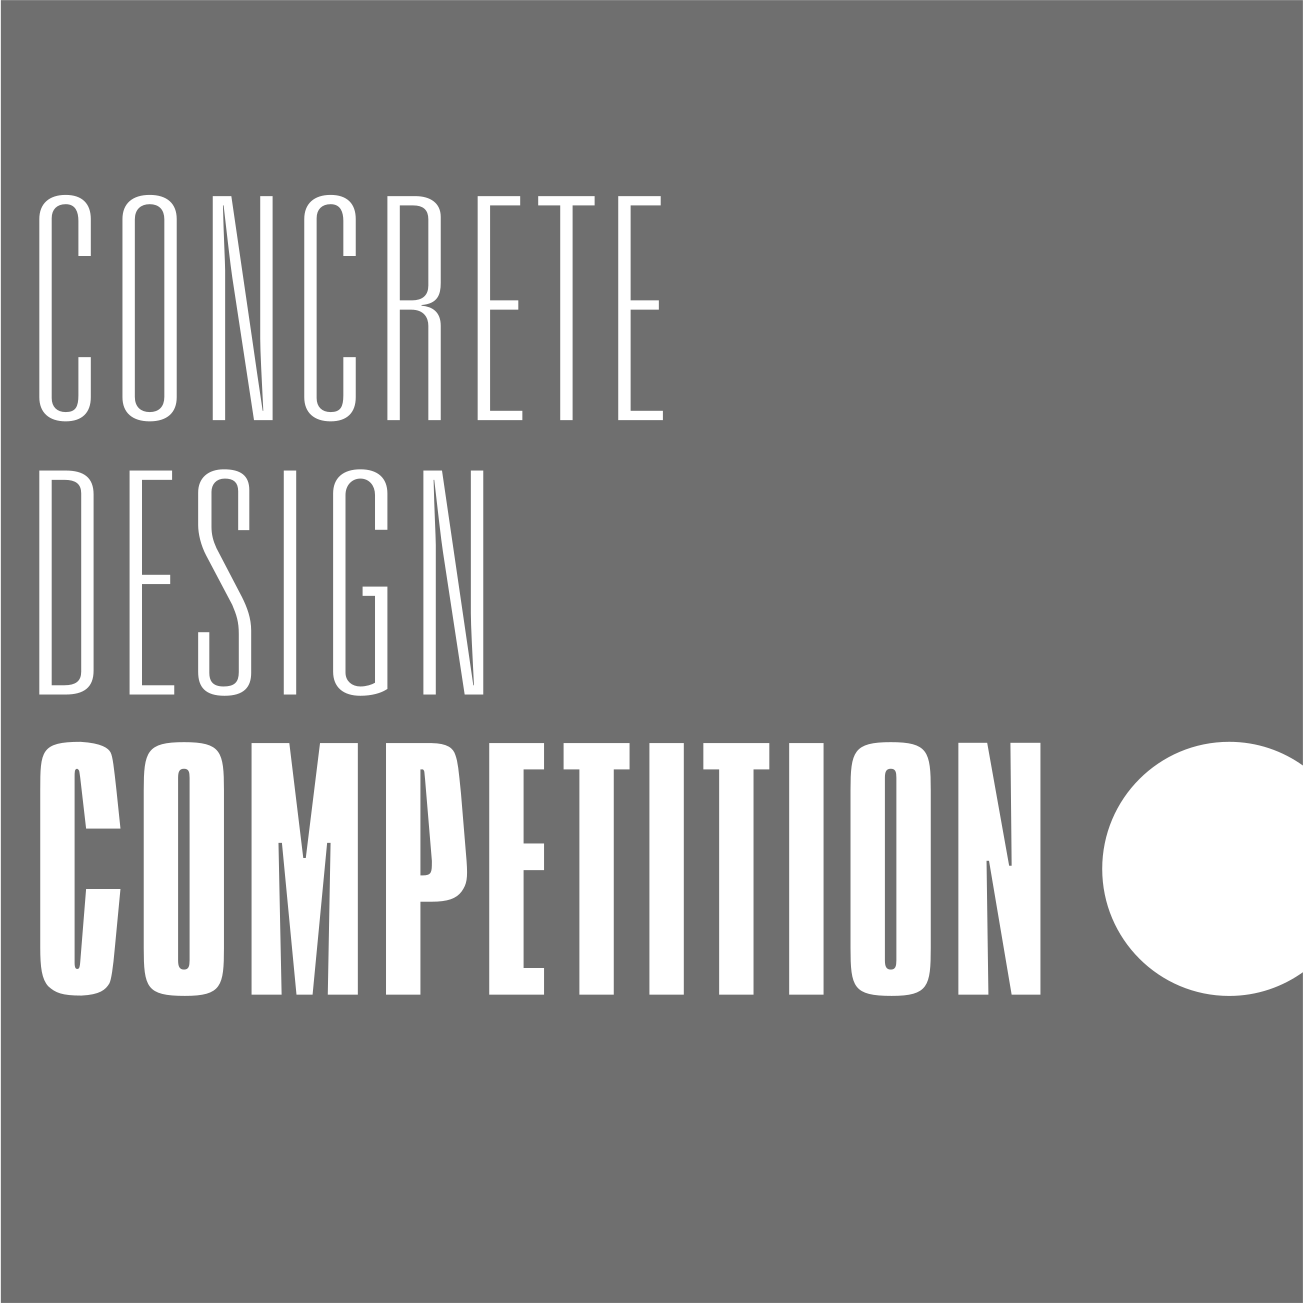 Concrete Design Competition